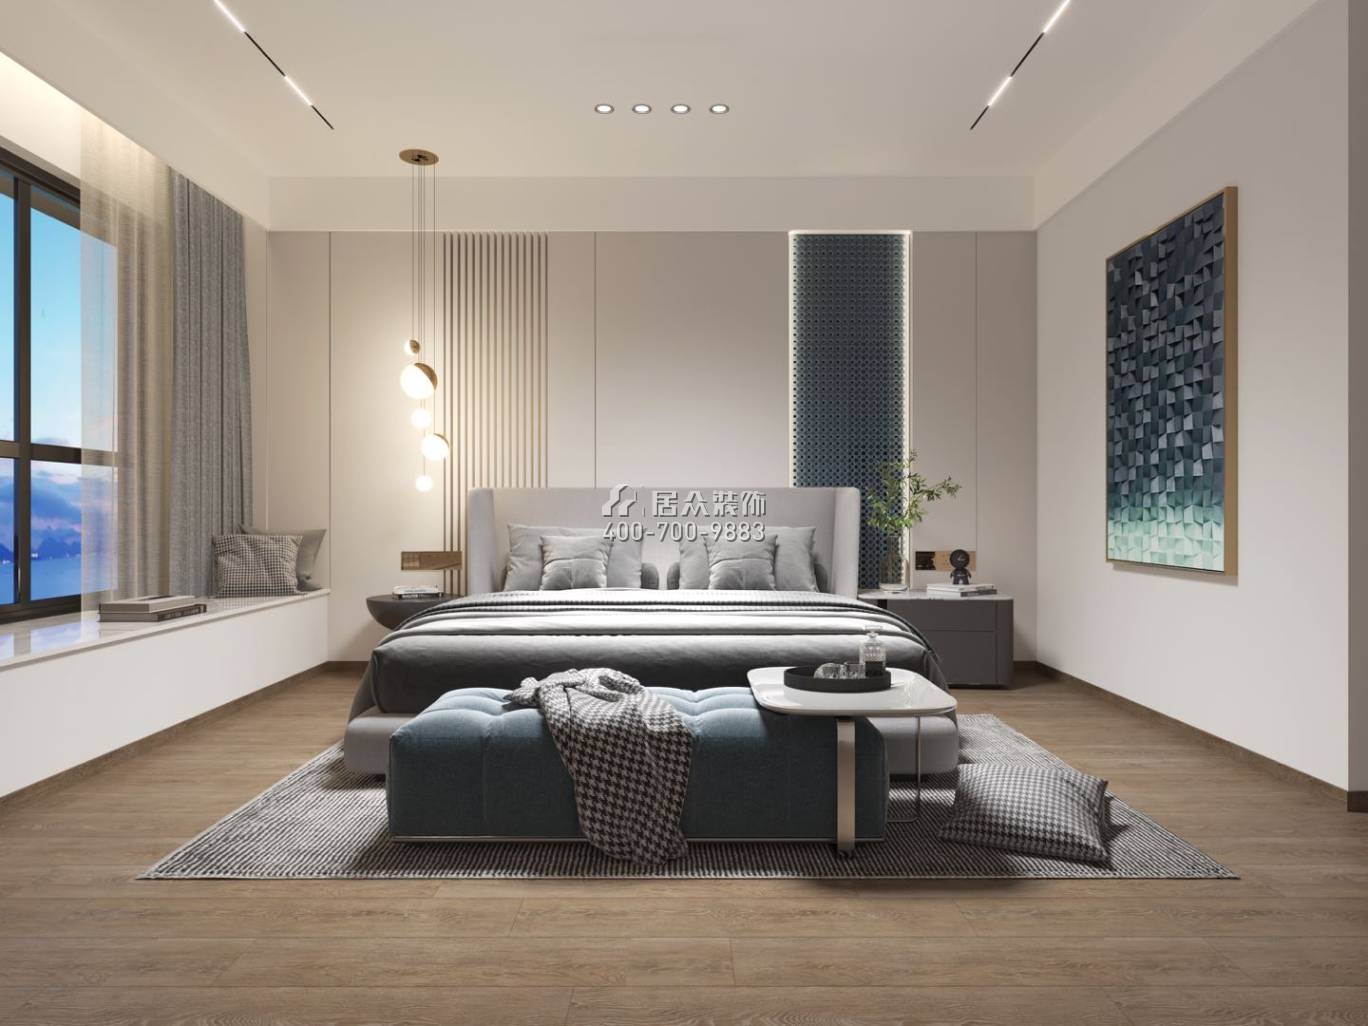 中信紅樹灣-三期638平方米現代簡約風格復式戶型臥室裝修效果圖